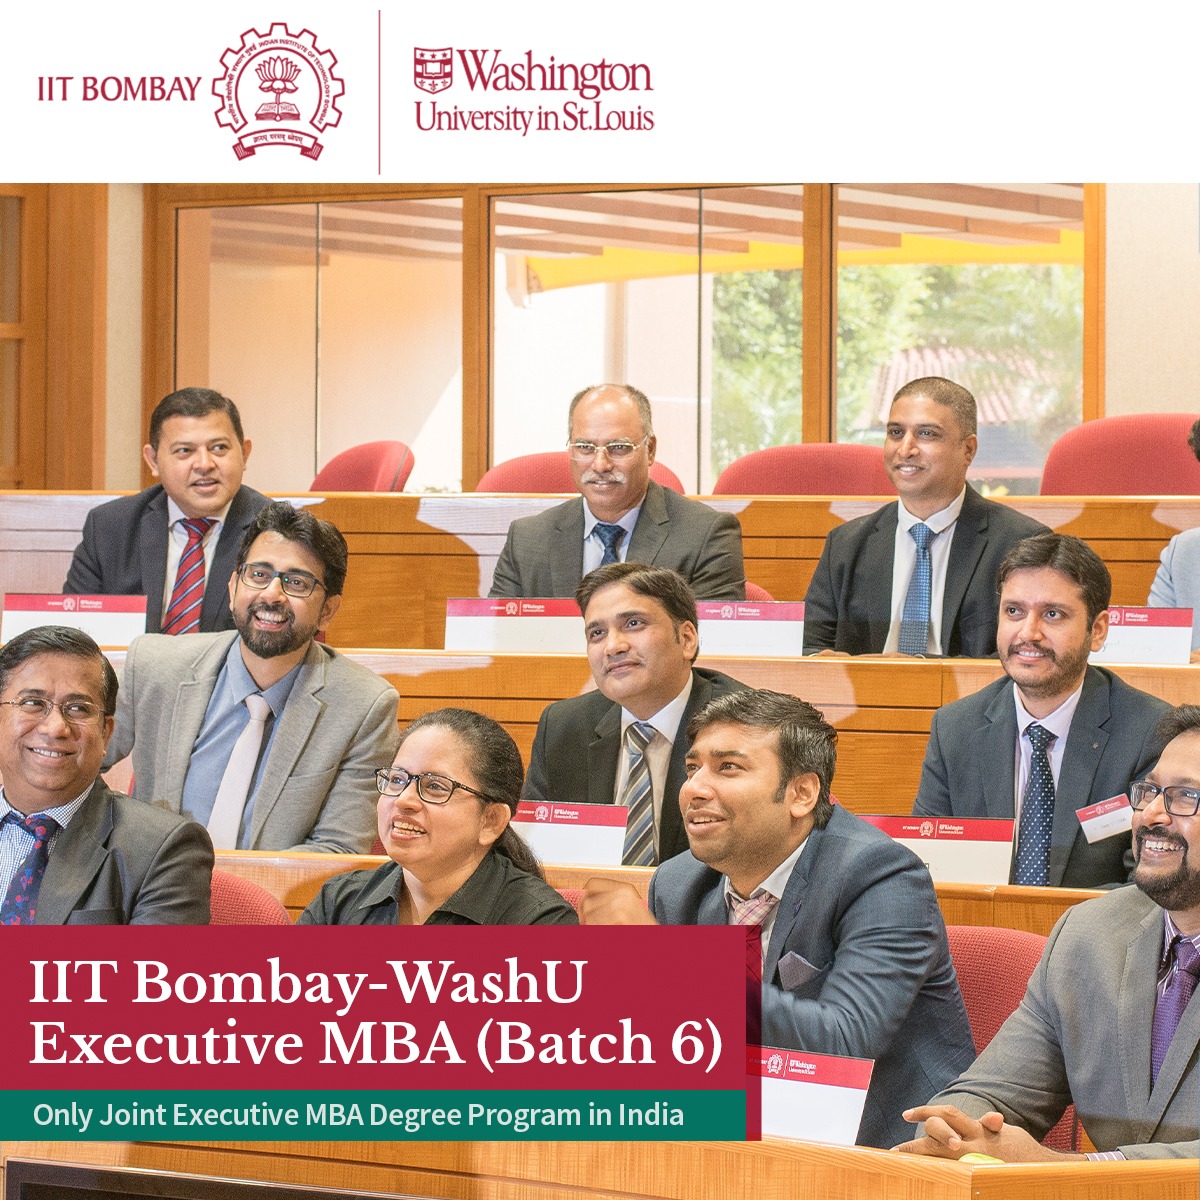 IIT Bombay-WashU Executive MBA